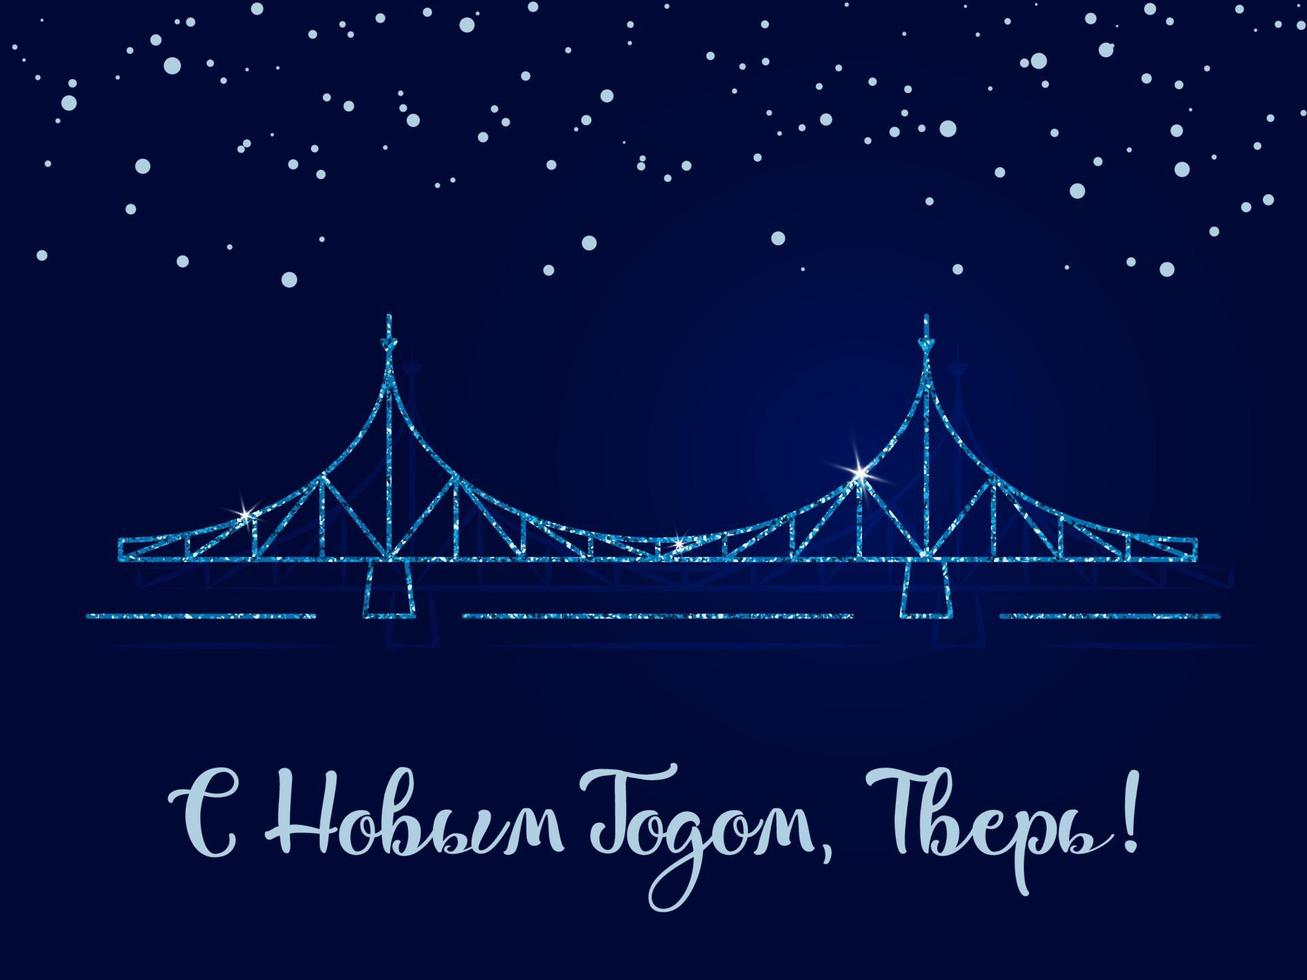 gott nytt år, tver - inskriptionen på ryska. den gamla bron är stadens främsta symbol. vektor illustration. mörkblå bakgrund med snöflingor.